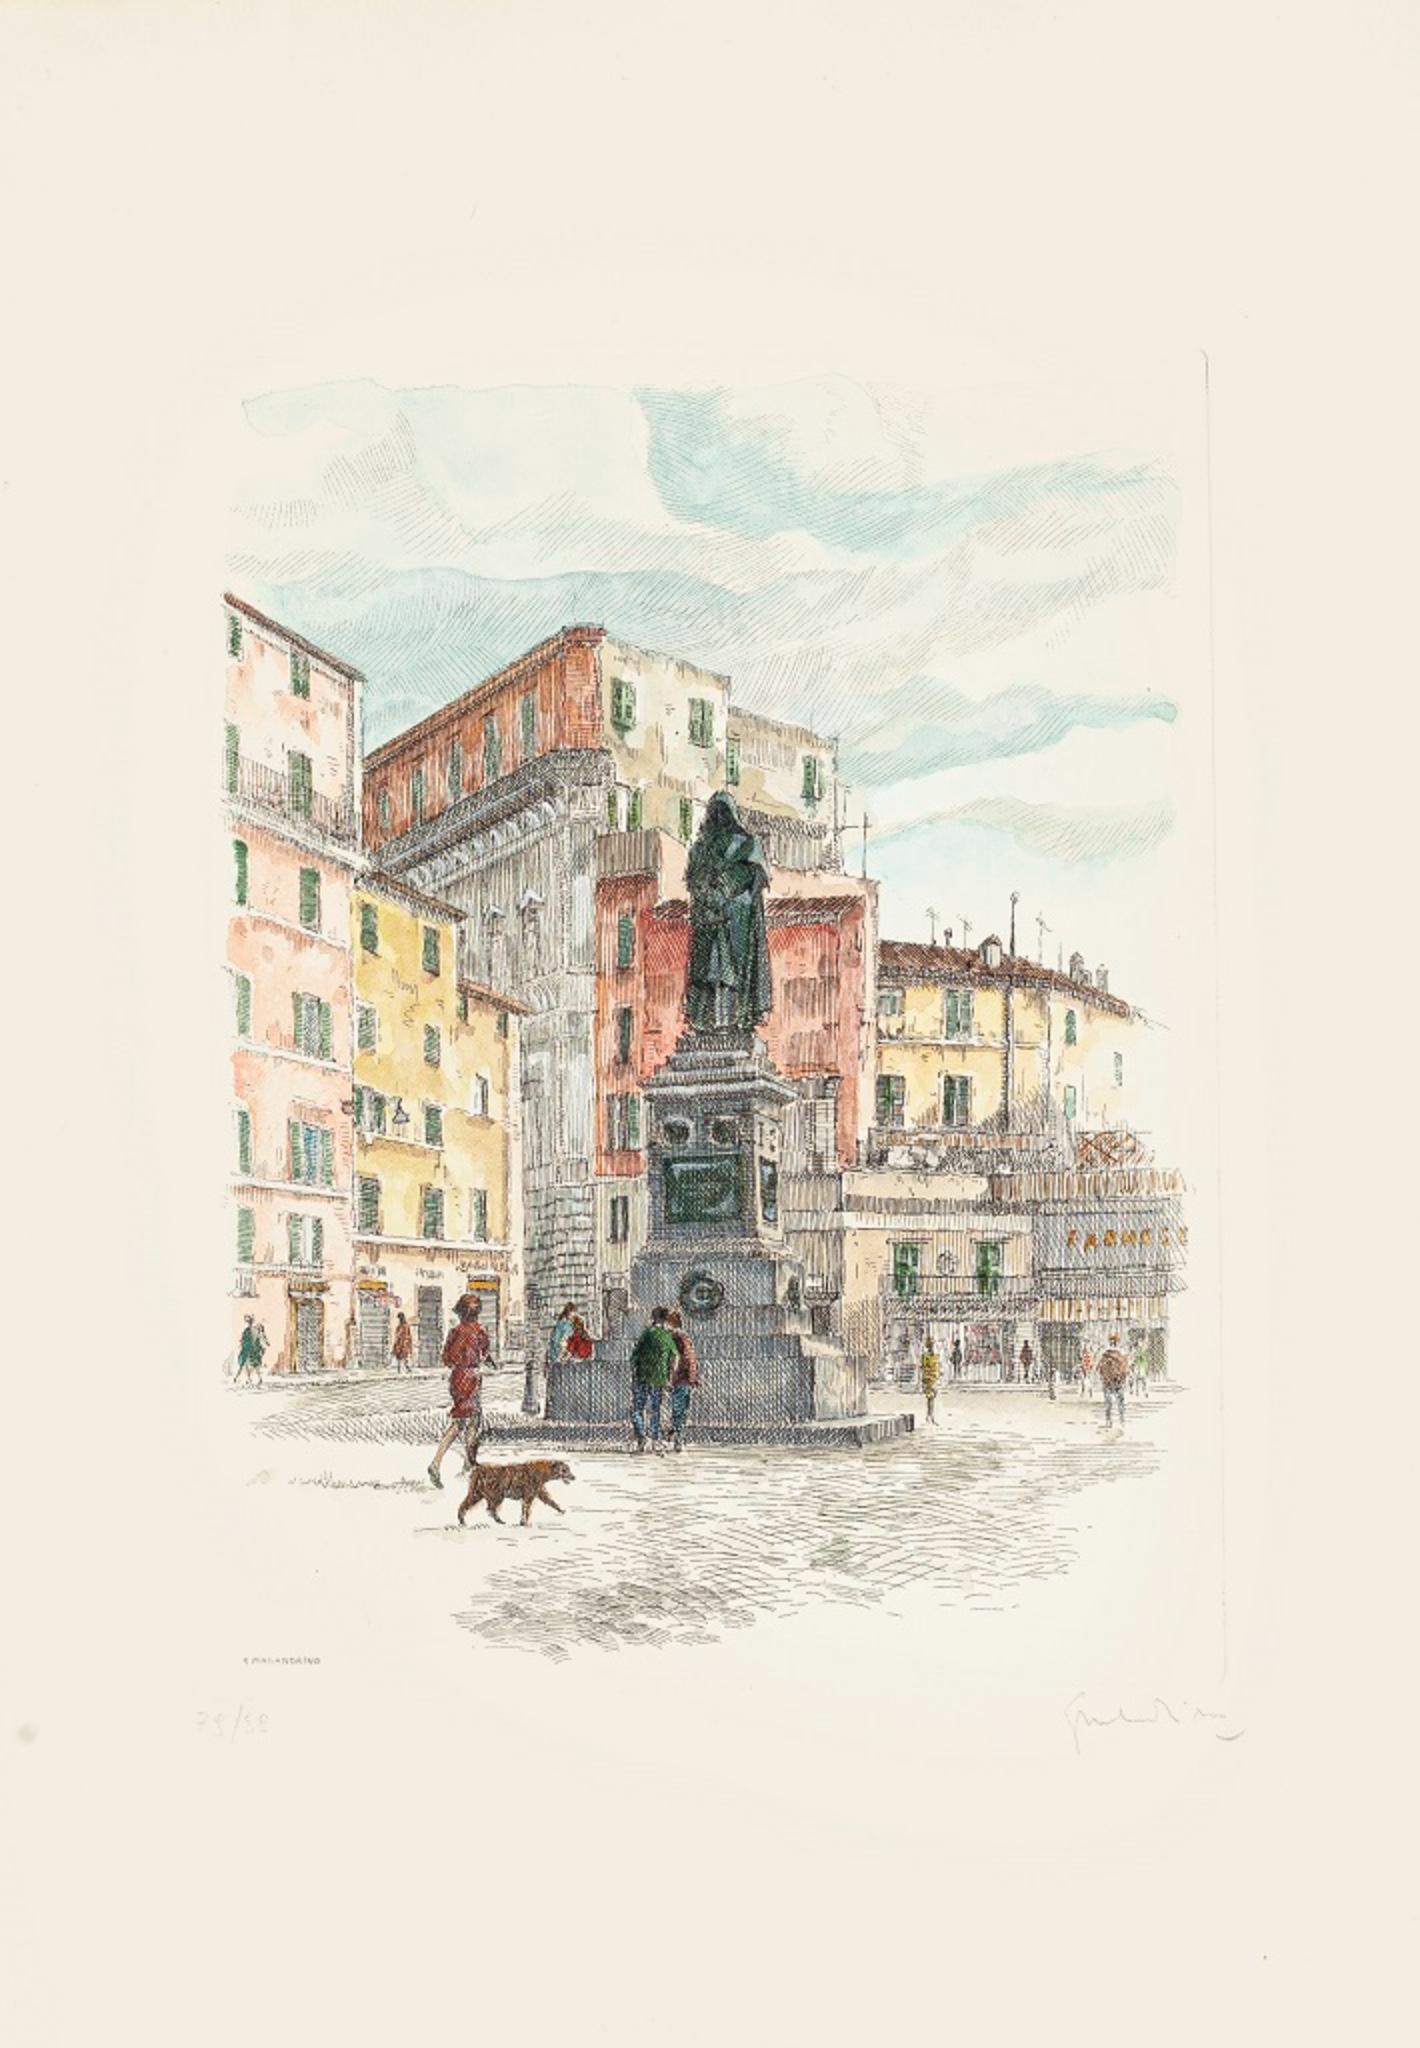 Navona Square - Rom ist ein Originalkunstwerk von Giuseppe Malandrino.

Originaldruck in Ätztechnik.

Vom Künstler in der rechten unteren Ecke mit Bleistift handsigniert. In der linken unteren Ecke nummeriert. Ausgabe 116/199.

Gute Bedingungen.